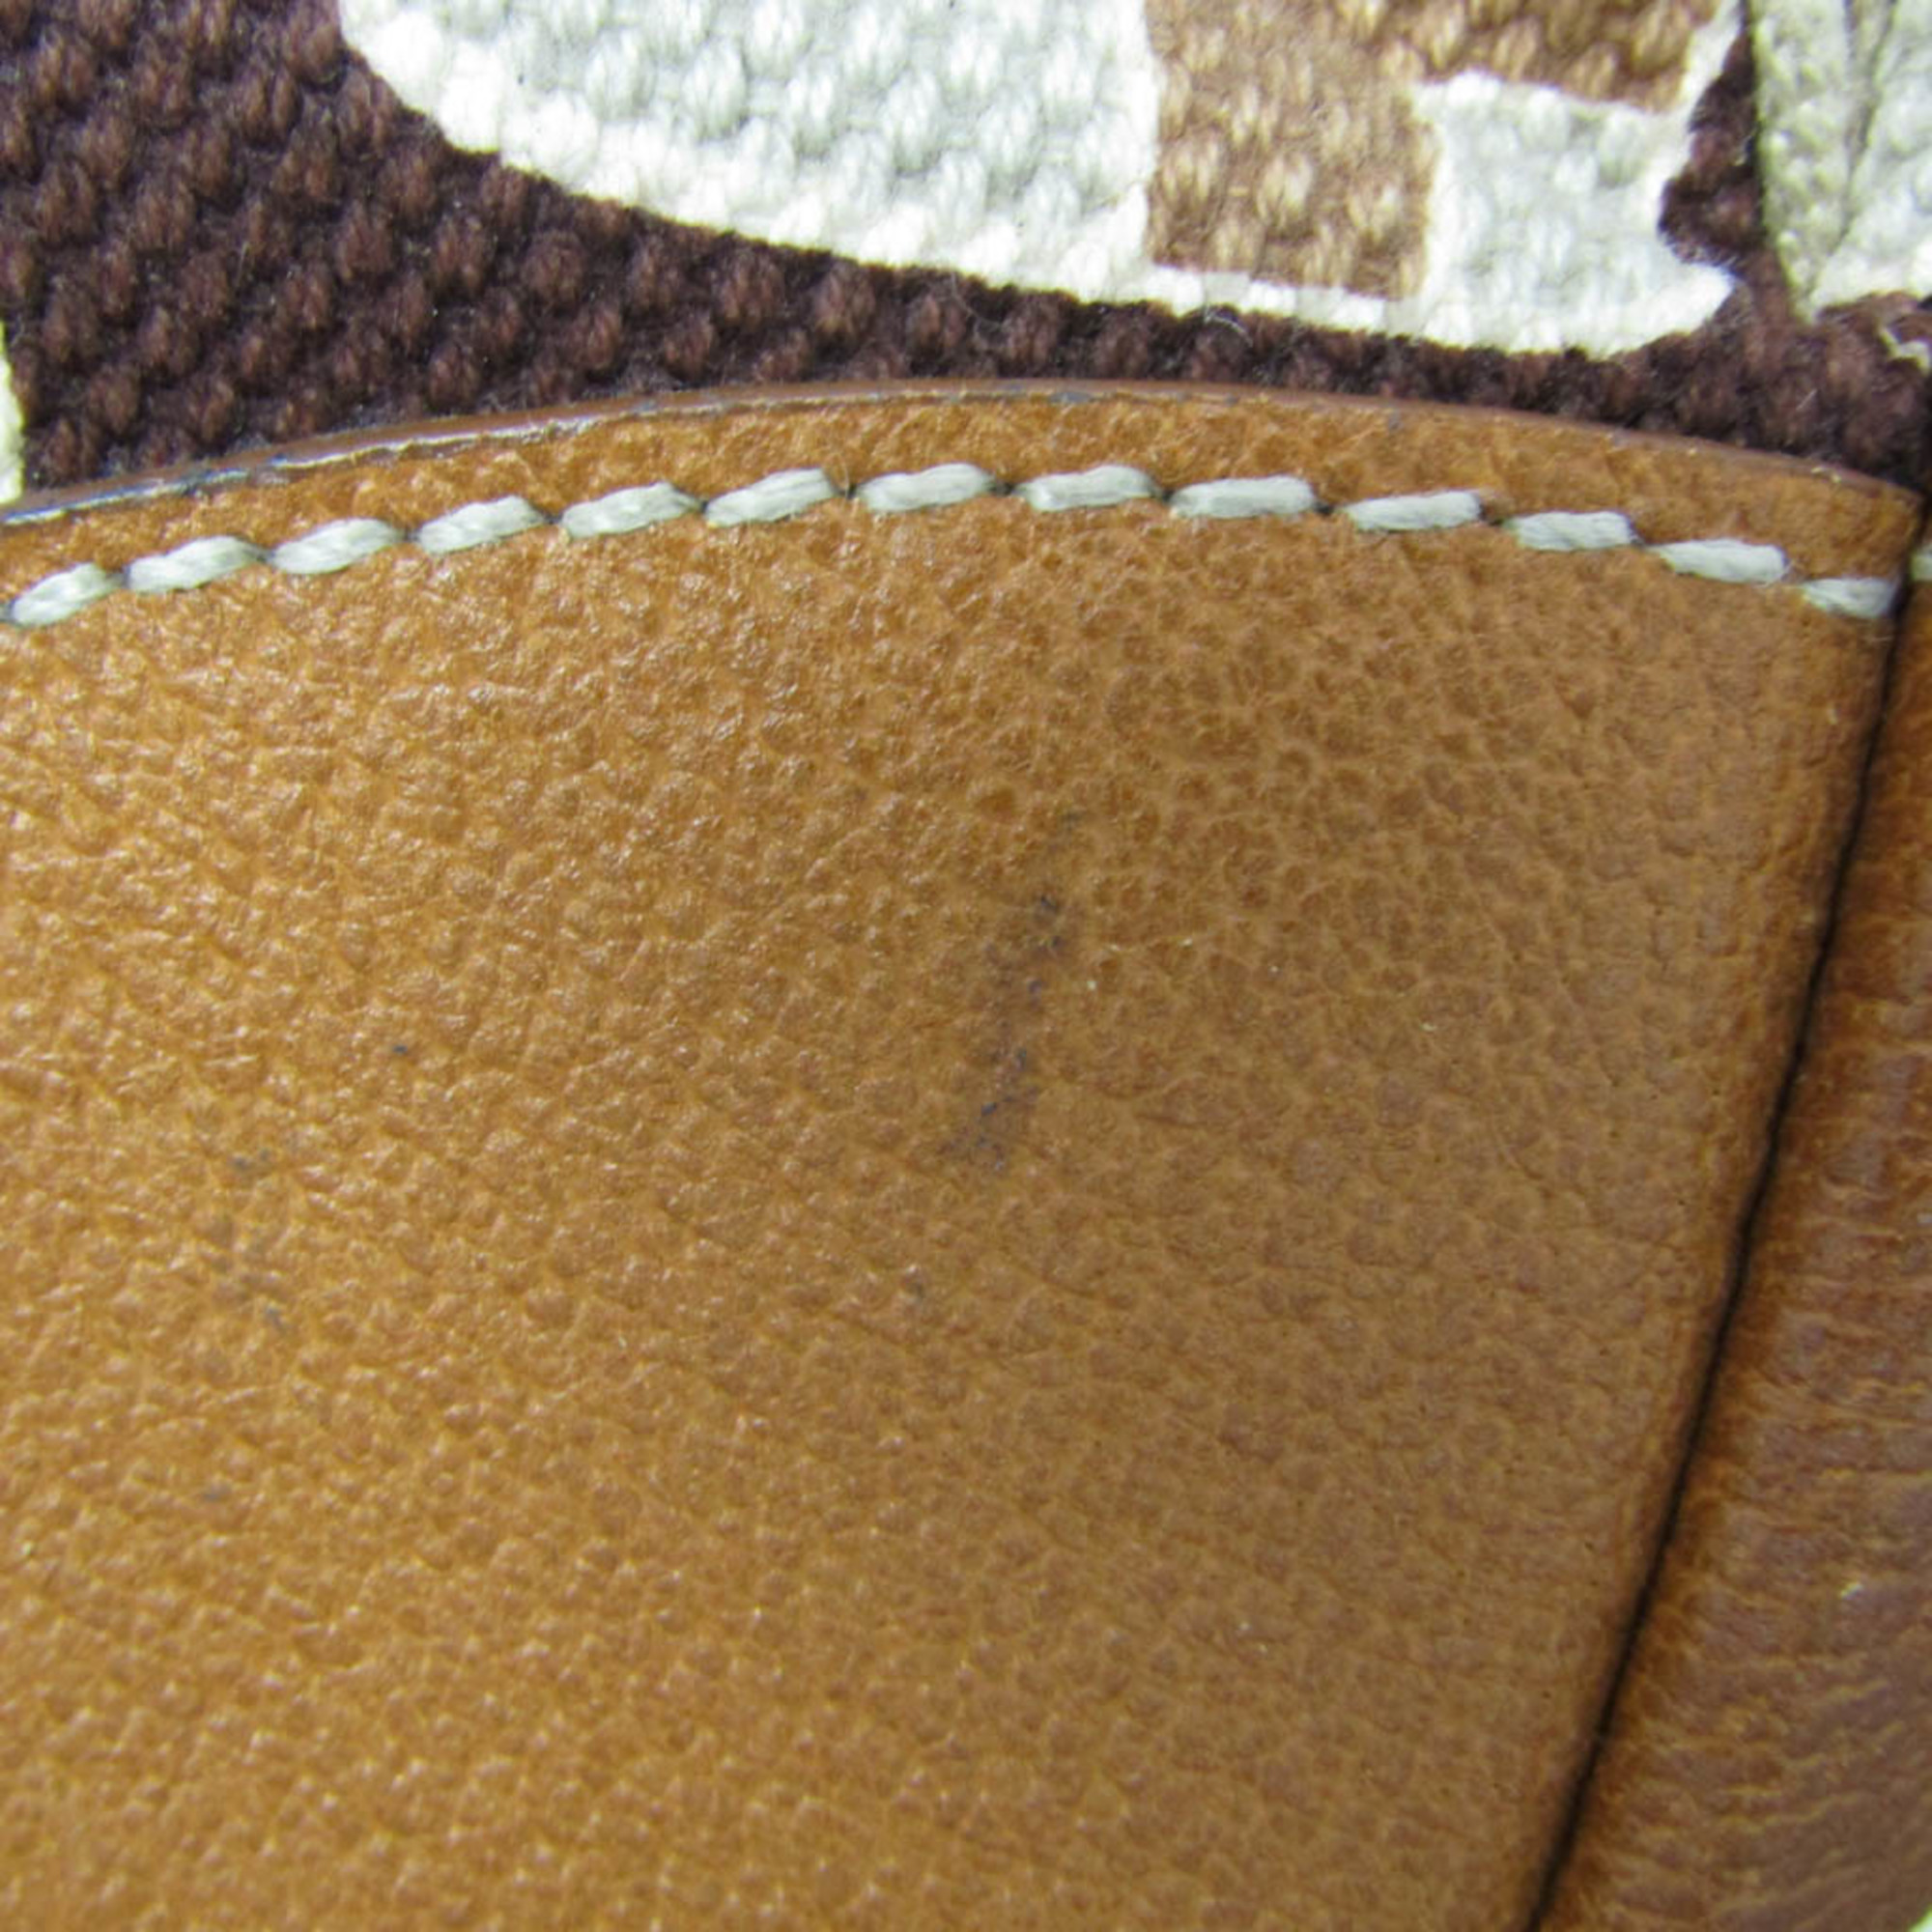 Prada Men's Canvas,Leather Shoulder Bag,Tote Bag Light Brown